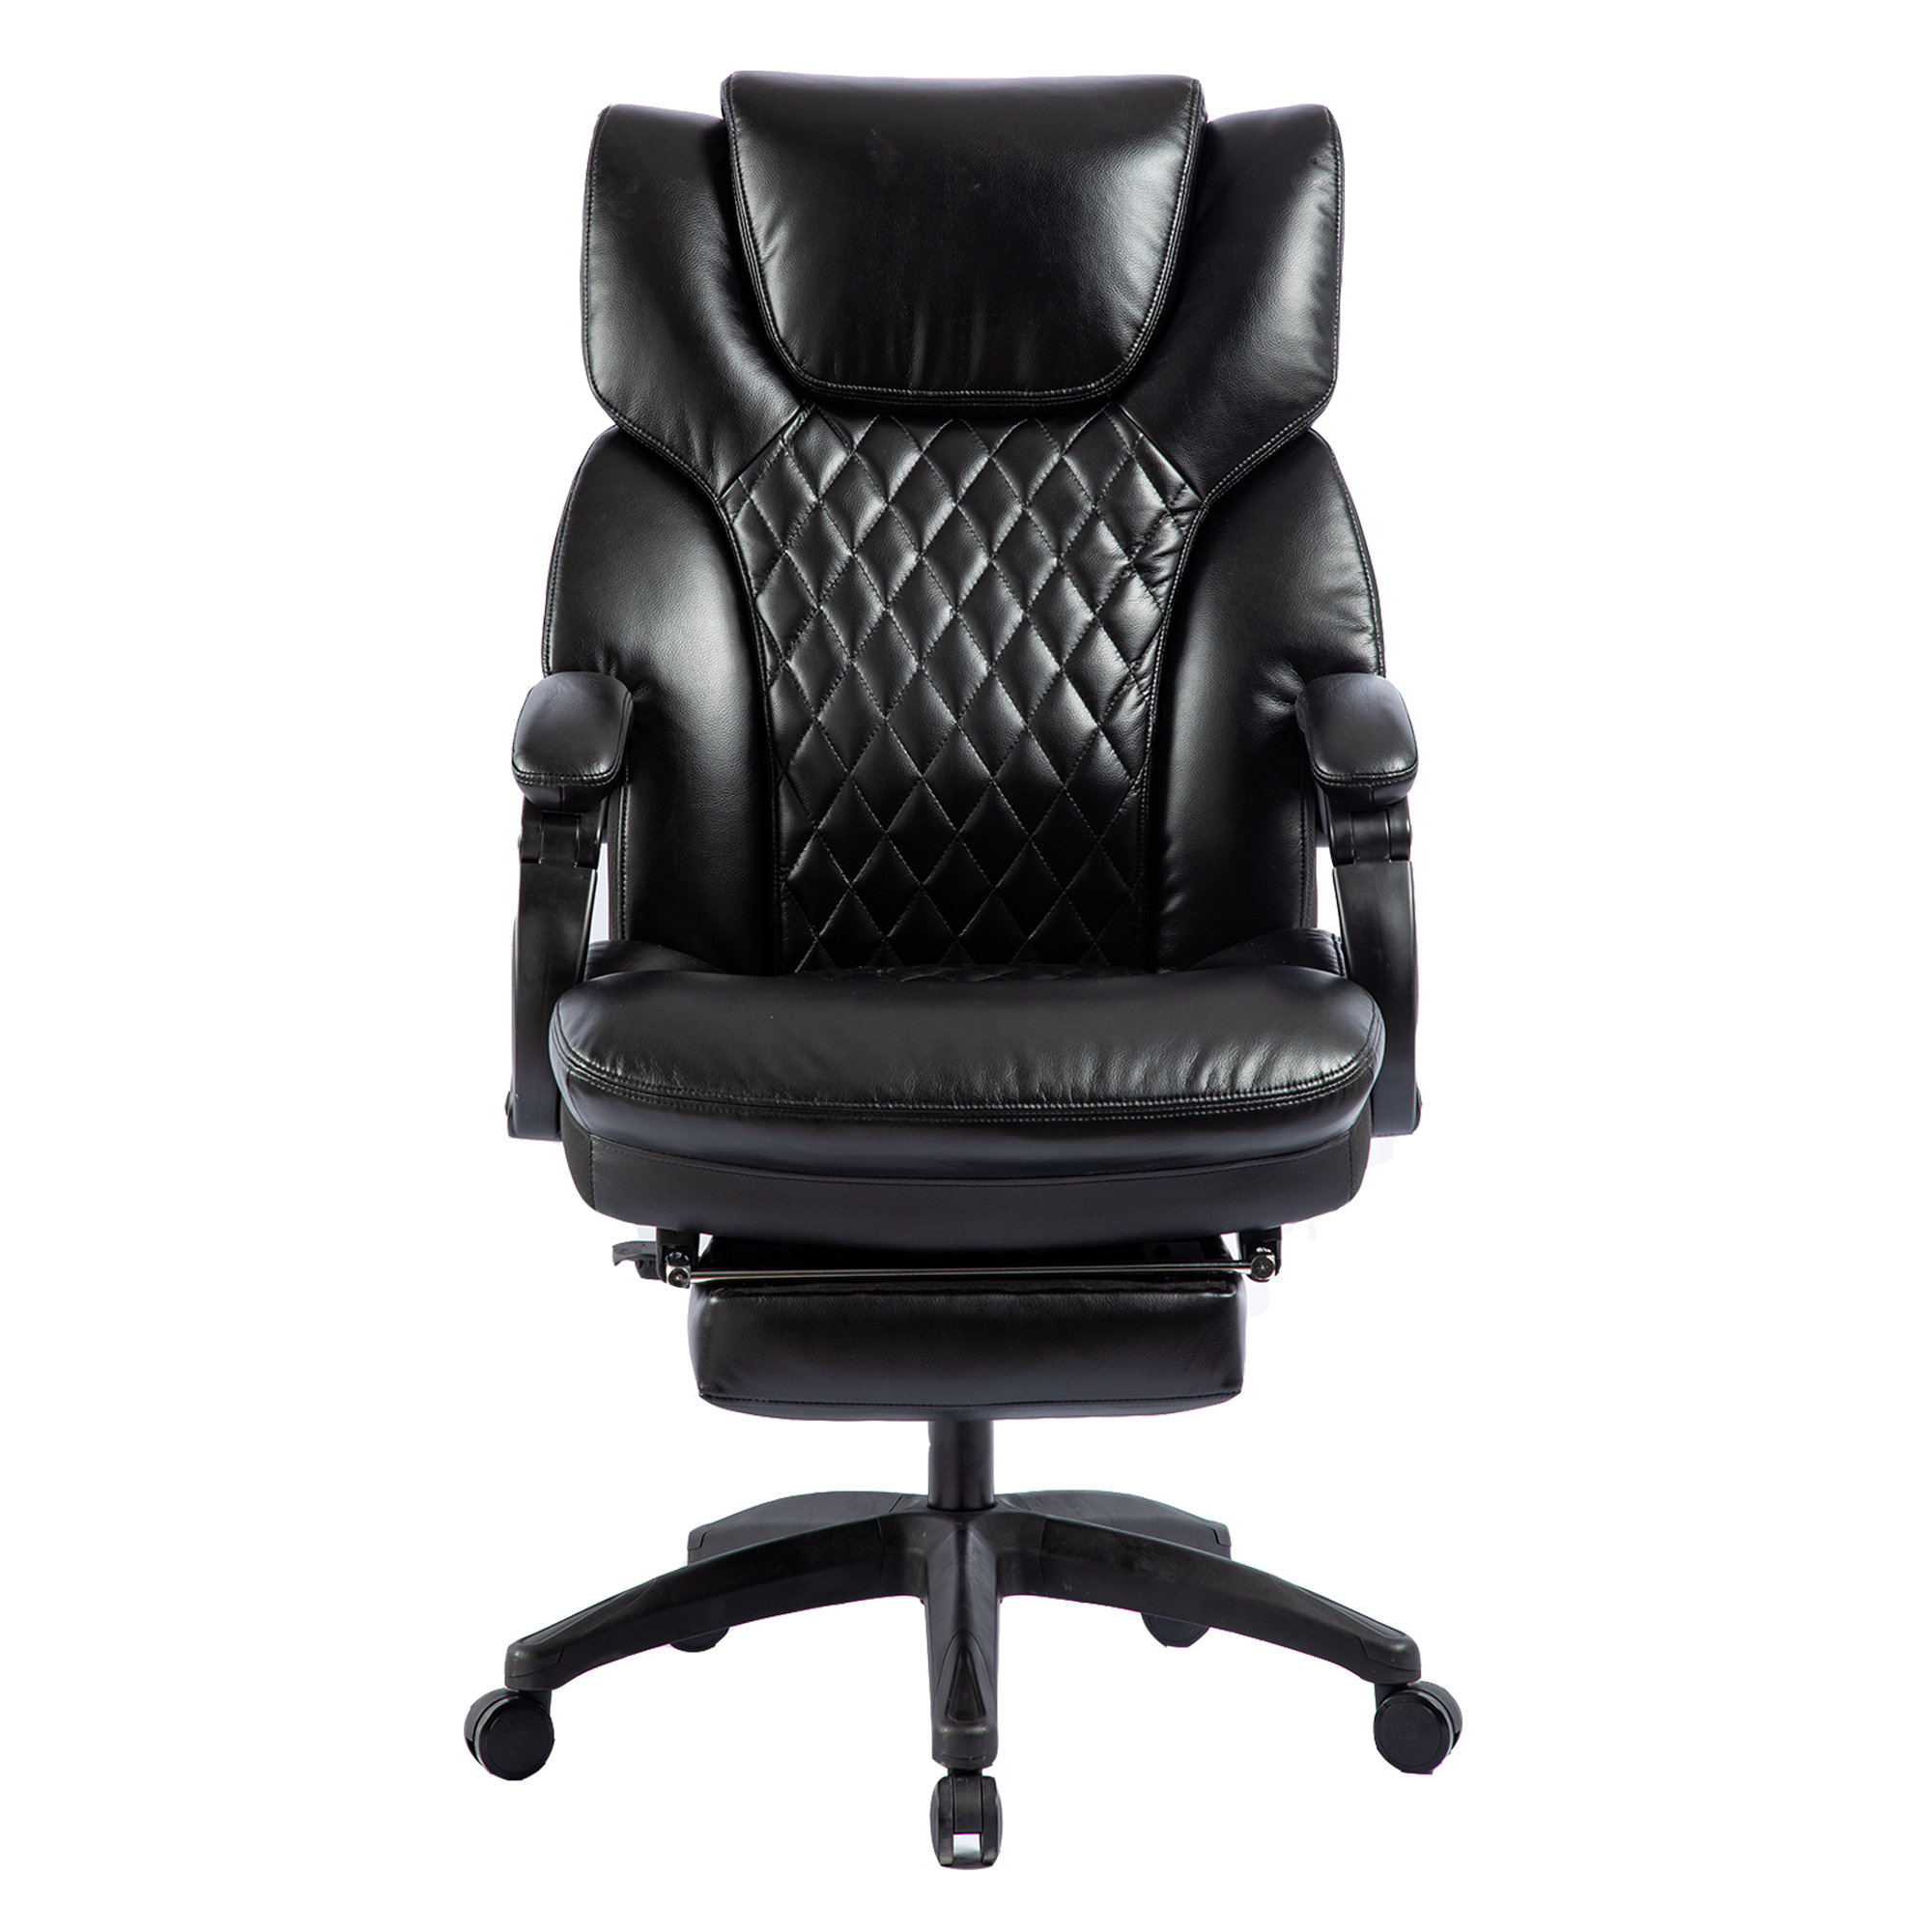 https://assets.wfcdn.com/im/93044912/compr-r85/2426/242638858/ergonomic-executive-chair.jpg